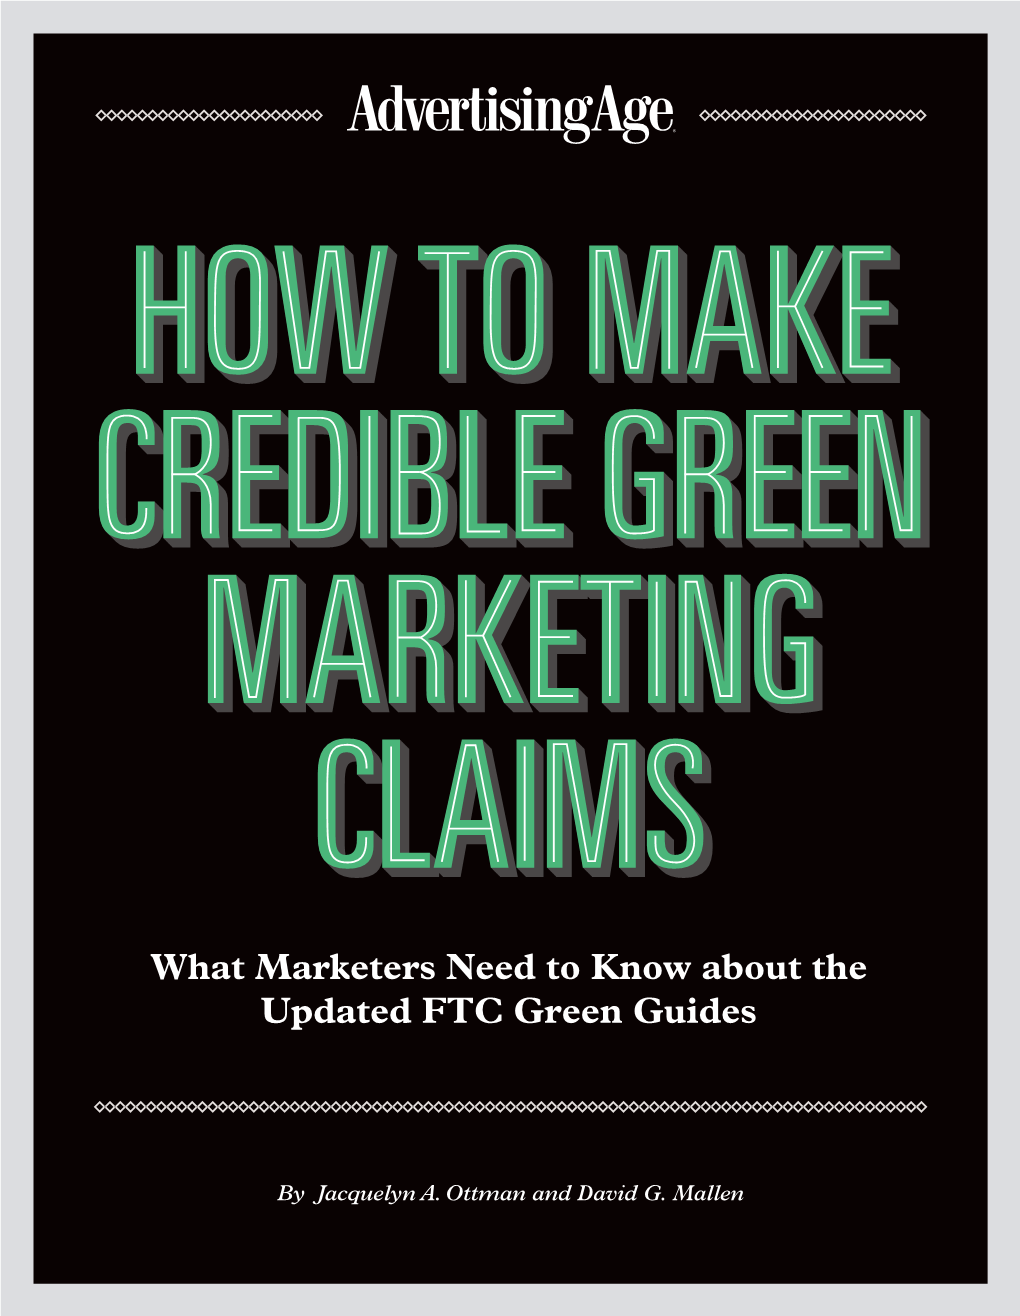 Green Marketing Guide 0905FINALAMK.Qxp